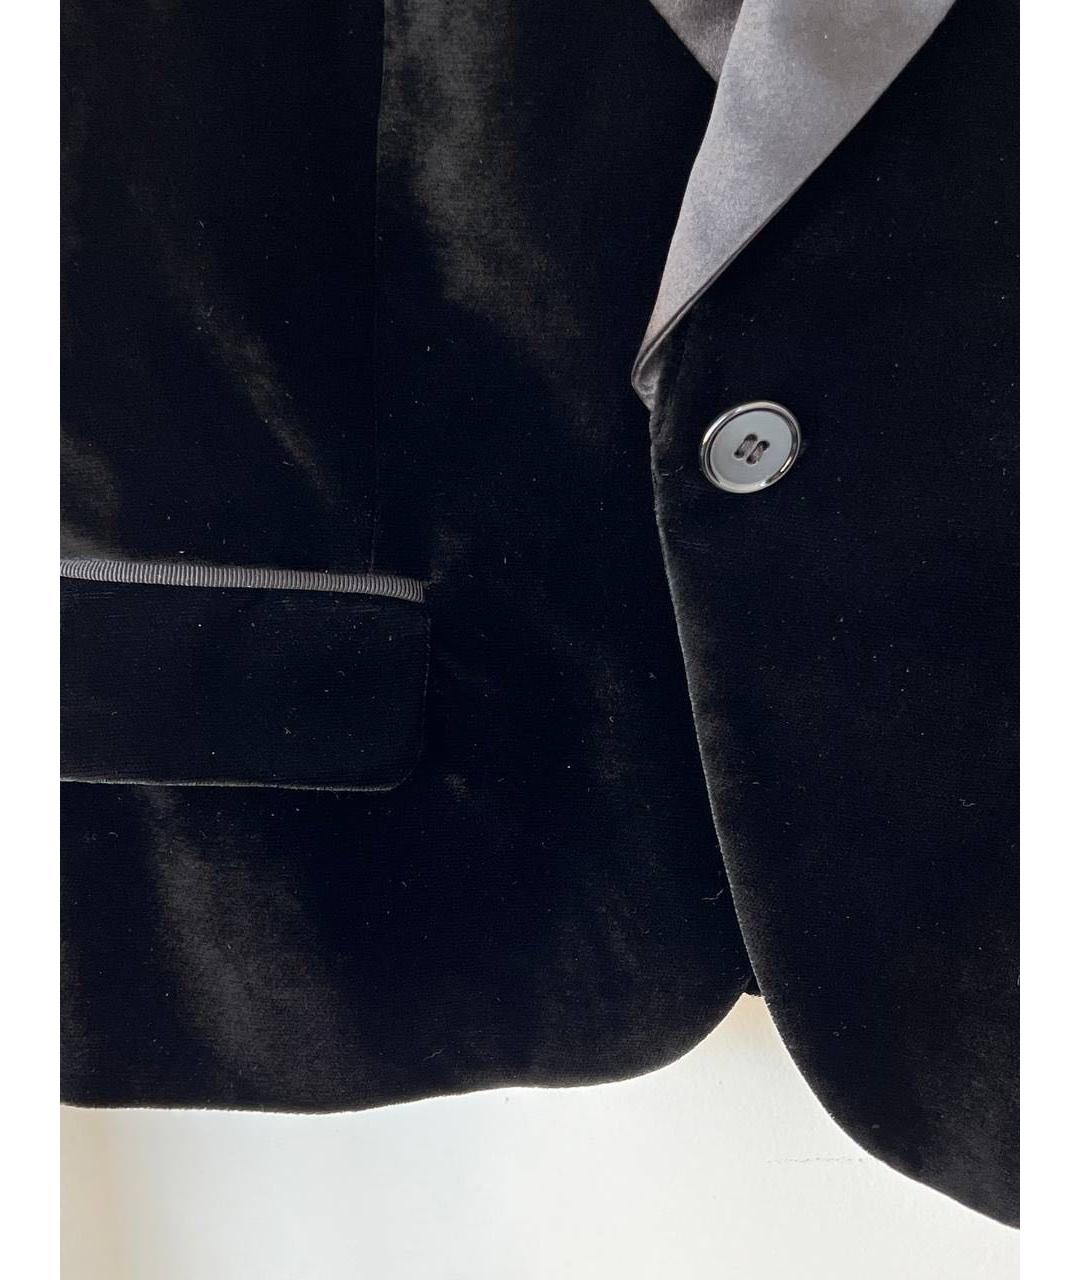 DOLCE&GABBANA Черный бархатный жакет/пиджак, фото 3